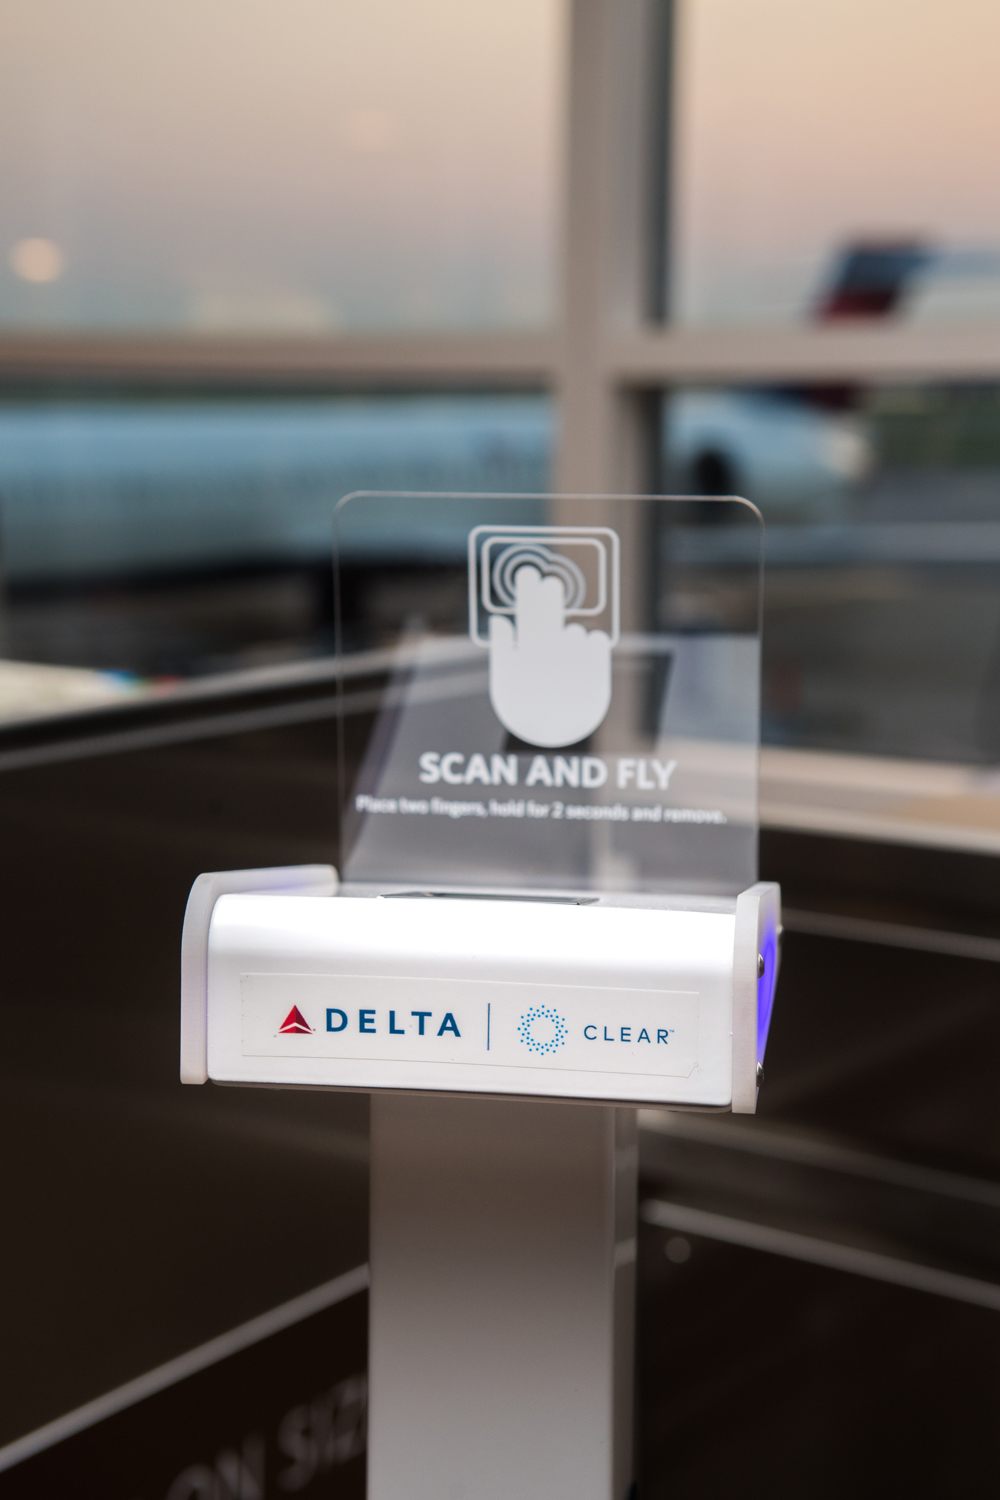 无需登机牌,指纹识别技术帮助客户快速登机